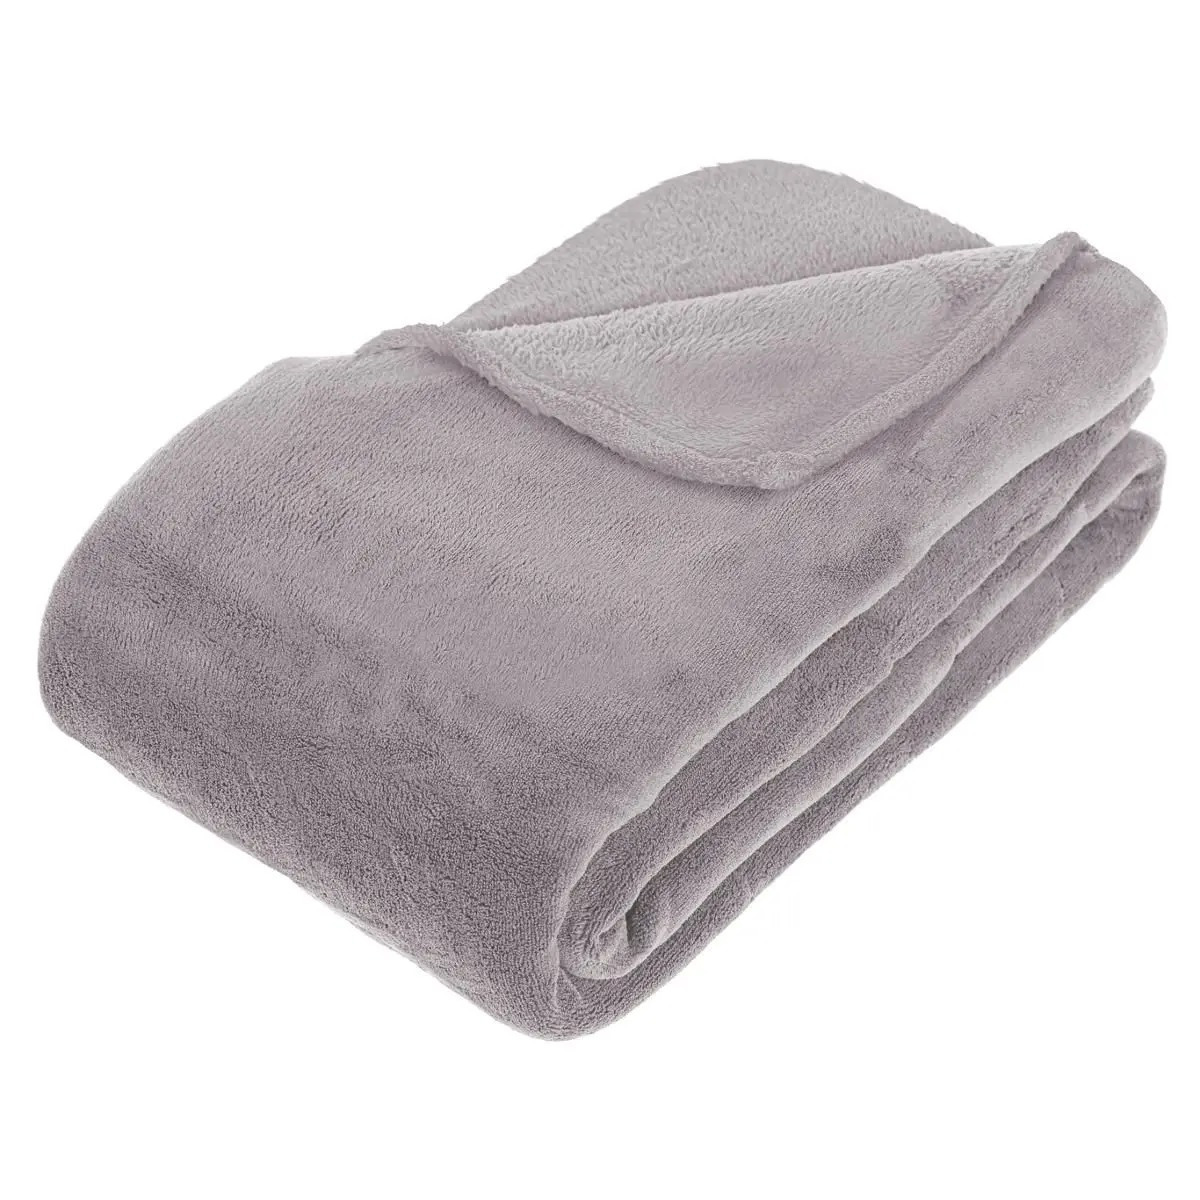 Groot fleece deken-fleeceplaid grijs 230 x 180 cm polyester